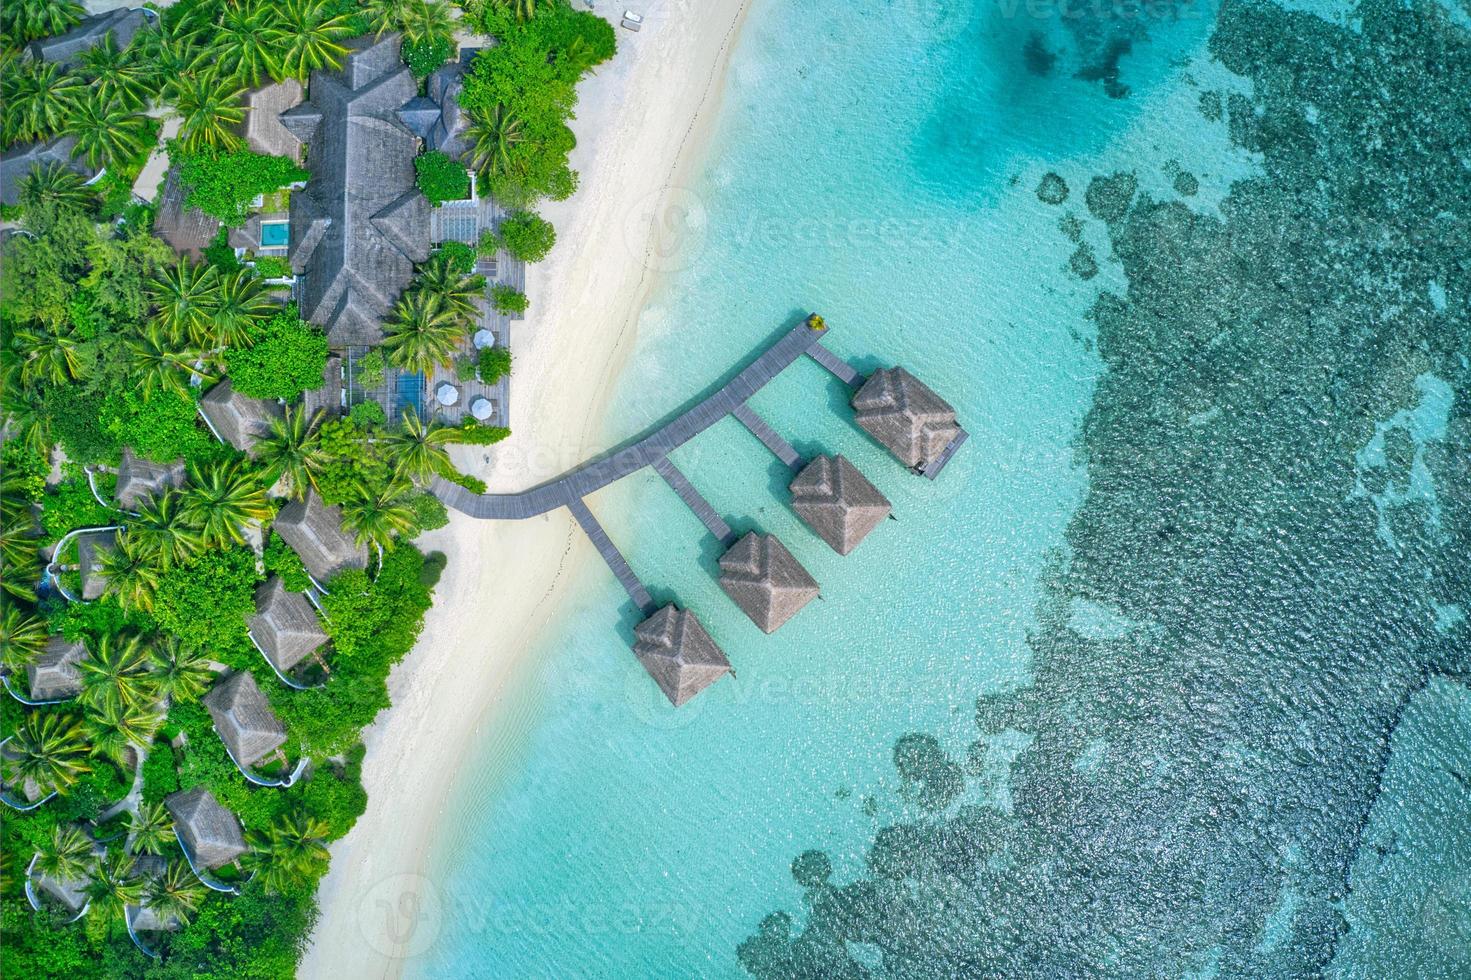 cenário do paraíso das Maldivas. paisagem aérea tropical, vista do mar com longo cais, vilas de água com incrível mar e praia de lagoa, natureza tropical. banner de destino de turismo exótico, férias de verão foto